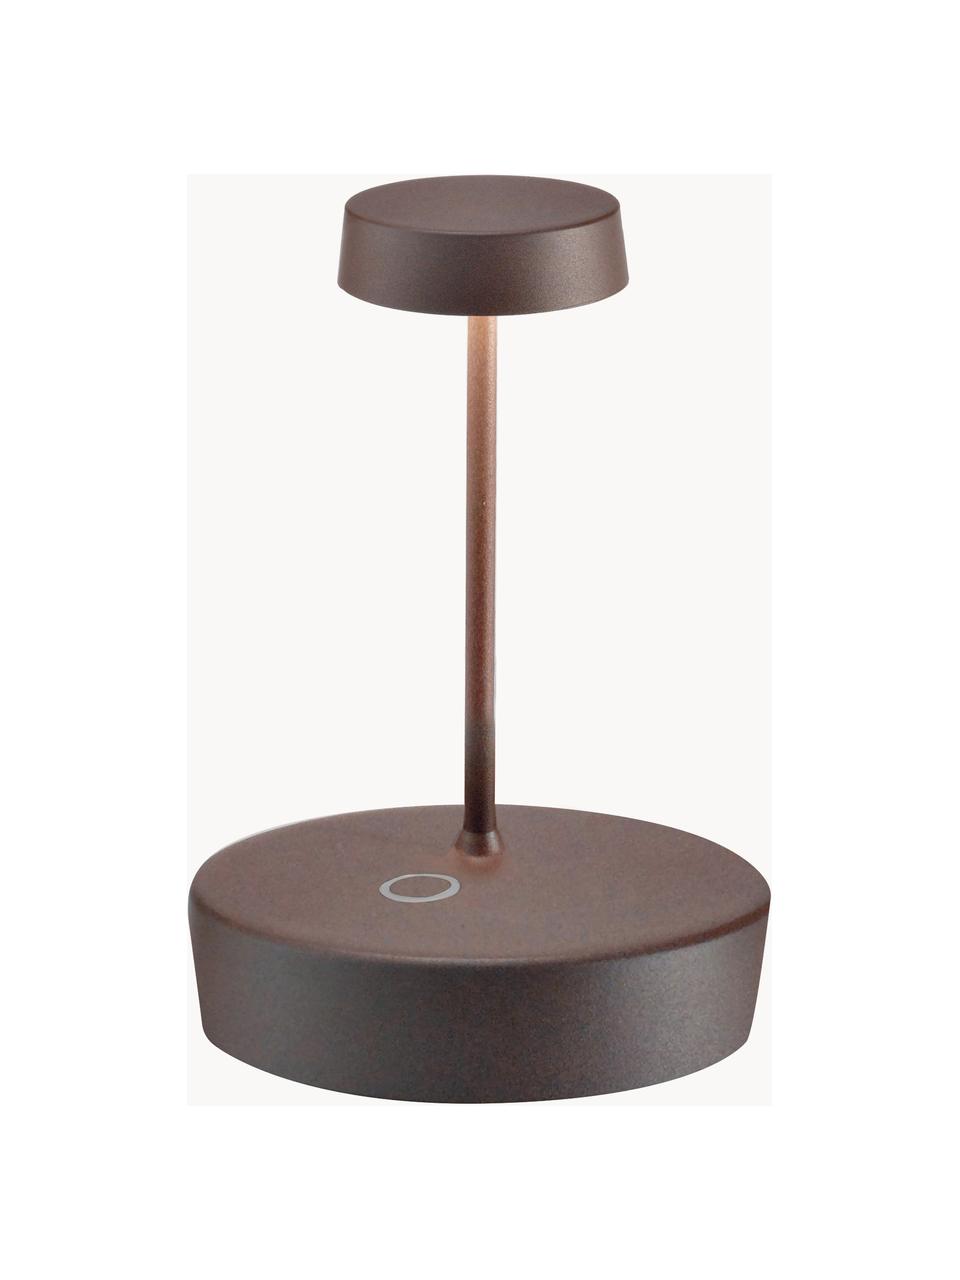 Lampa stołowa LED z funkcją przyciemniania Swap Mini, Nugatowy, Ø 10 x 15 cm